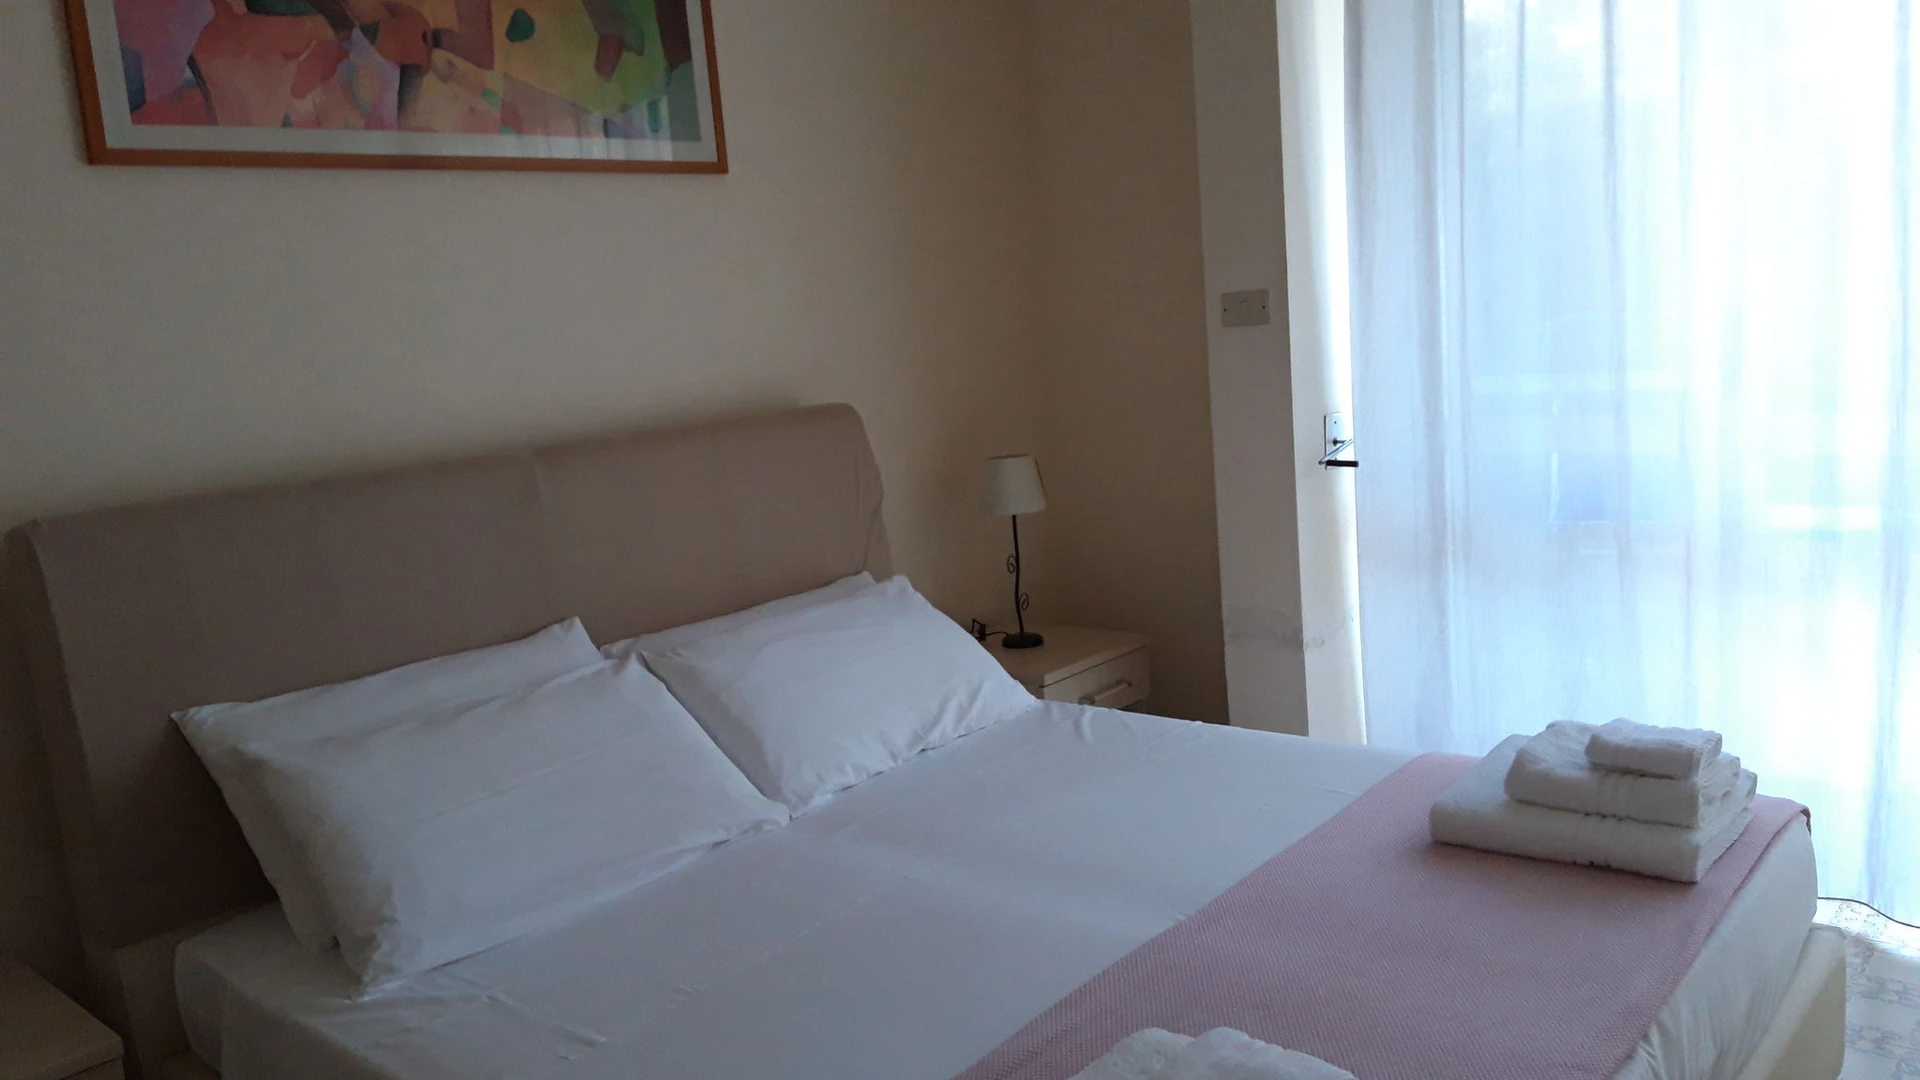 Lecce içinde 3 yatak odalı konaklama